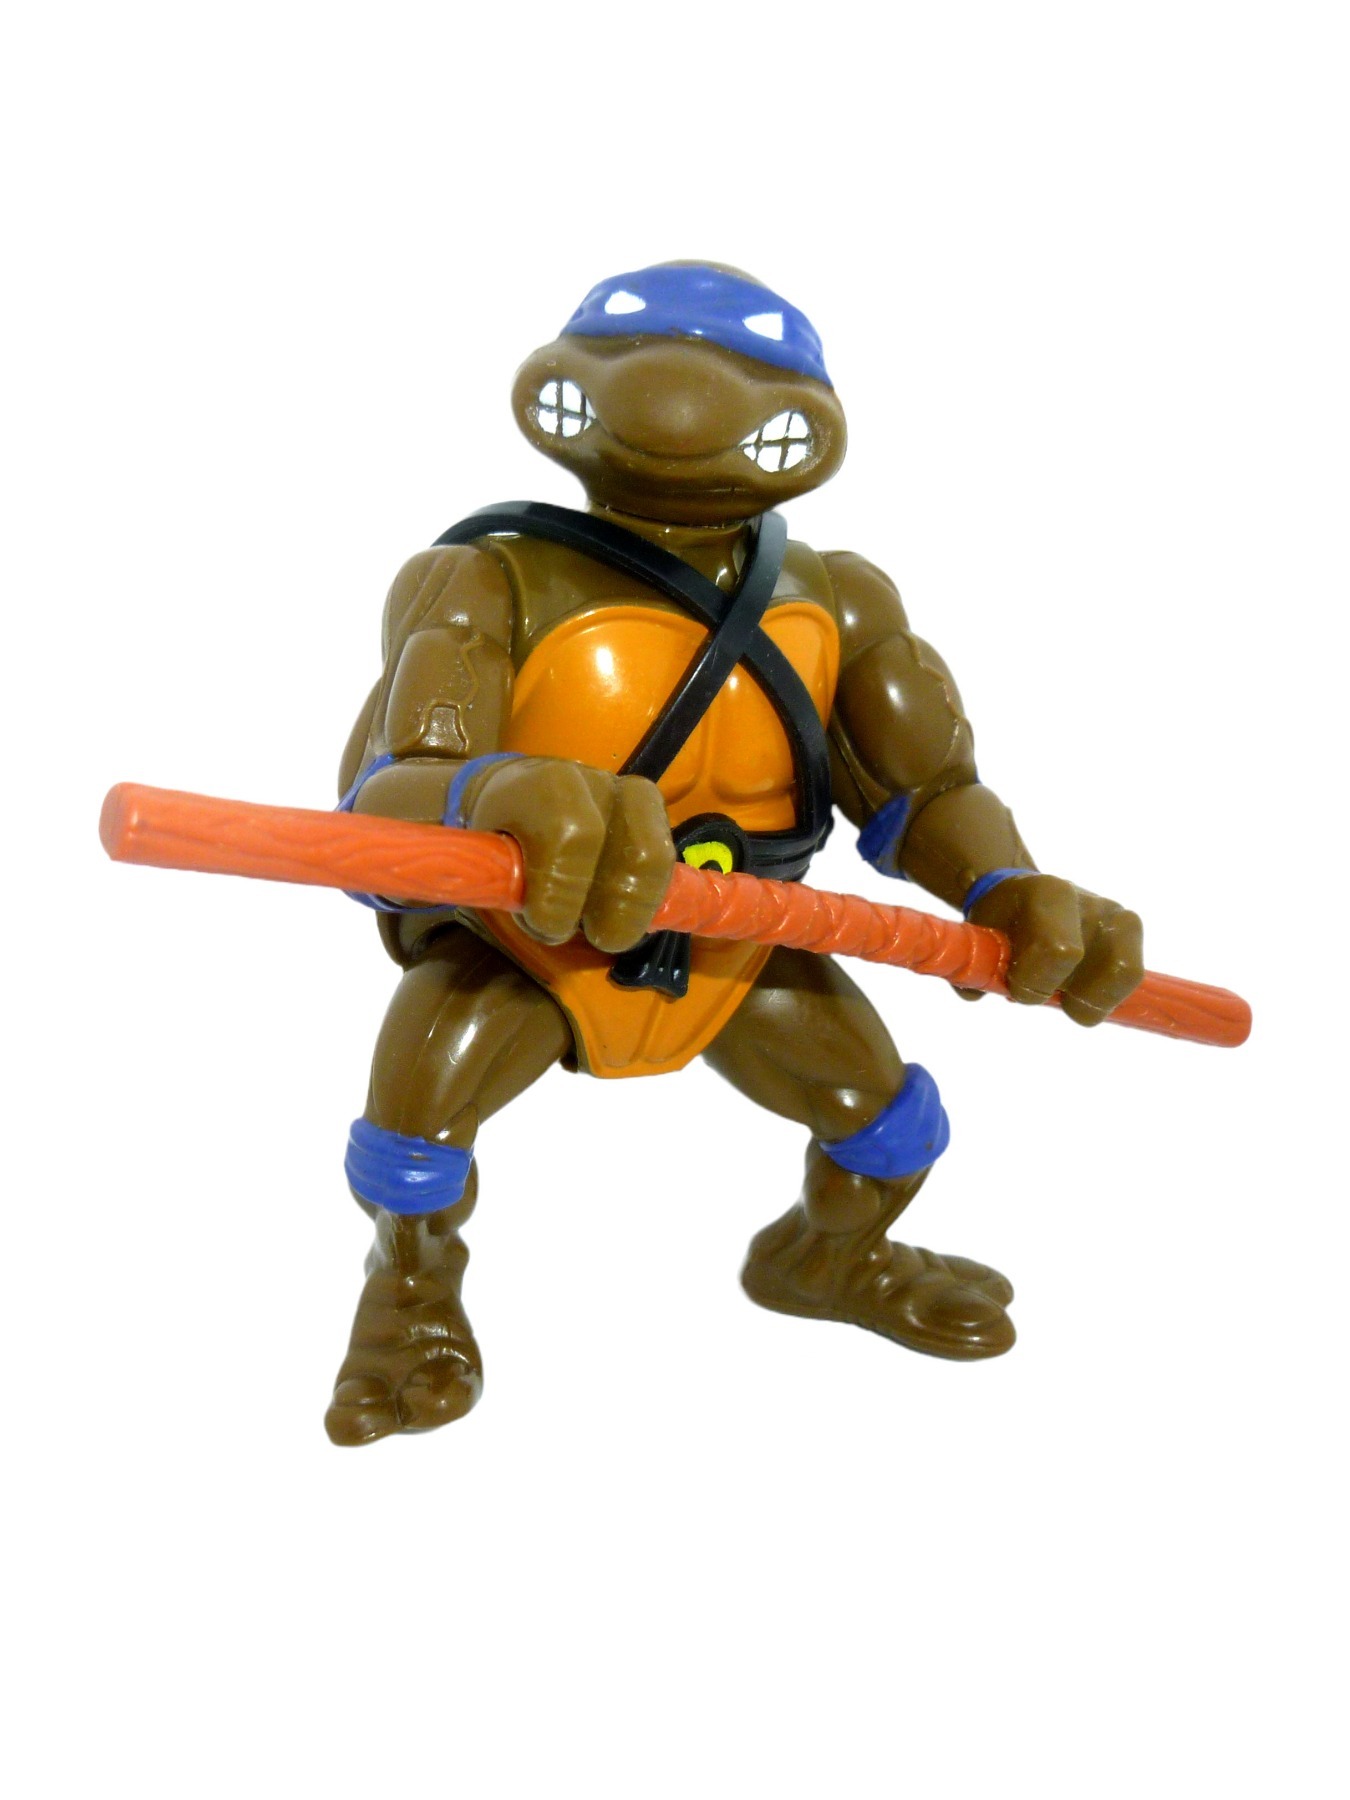 Donatello 1988 Mirage Studios / Playmates Toys